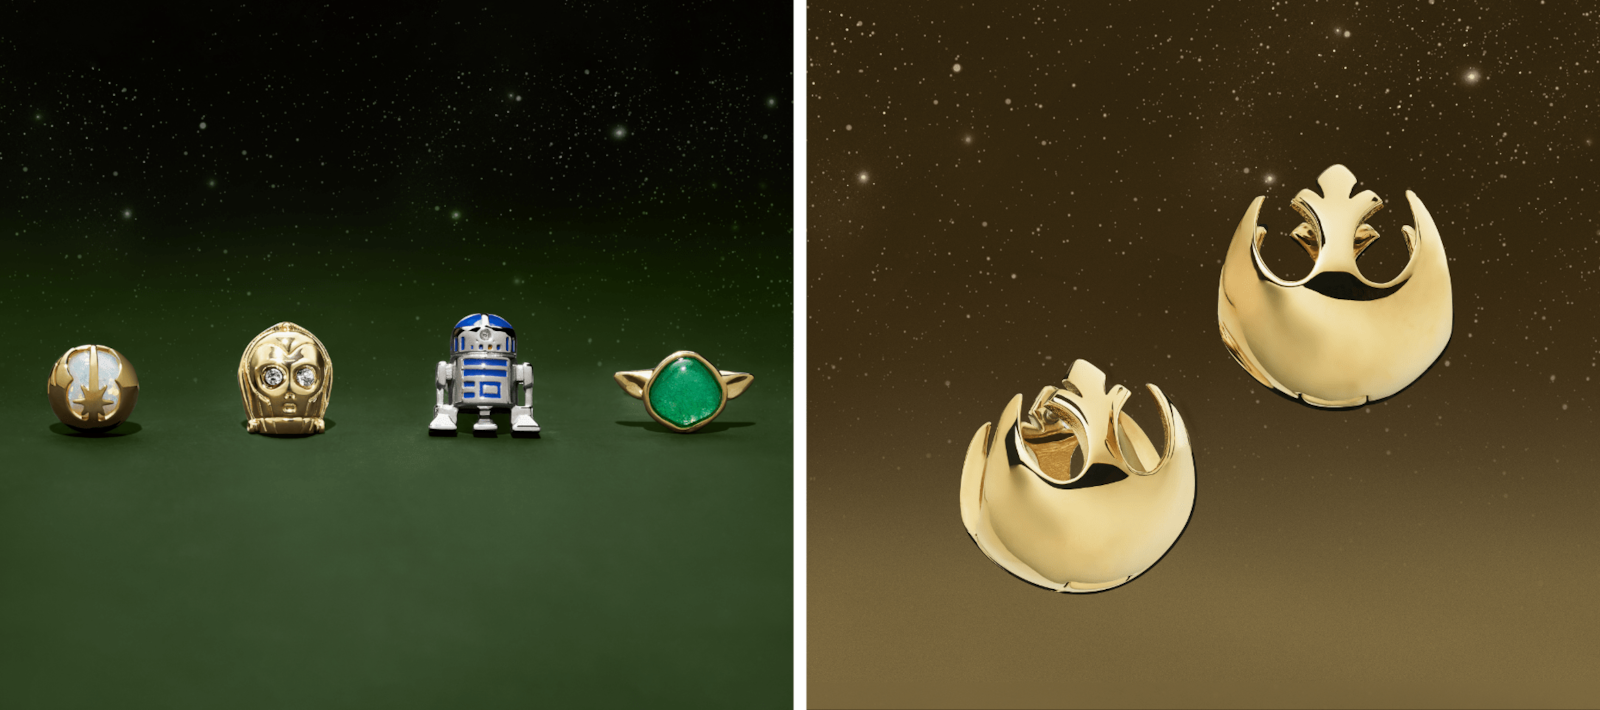 Ohrstecker in Form des Rebellionssymbols, von C-3PO, R2-D2 und Yoda. Goldfarbene Huggie-Ohrringe in Form des Rebellionssymbols.